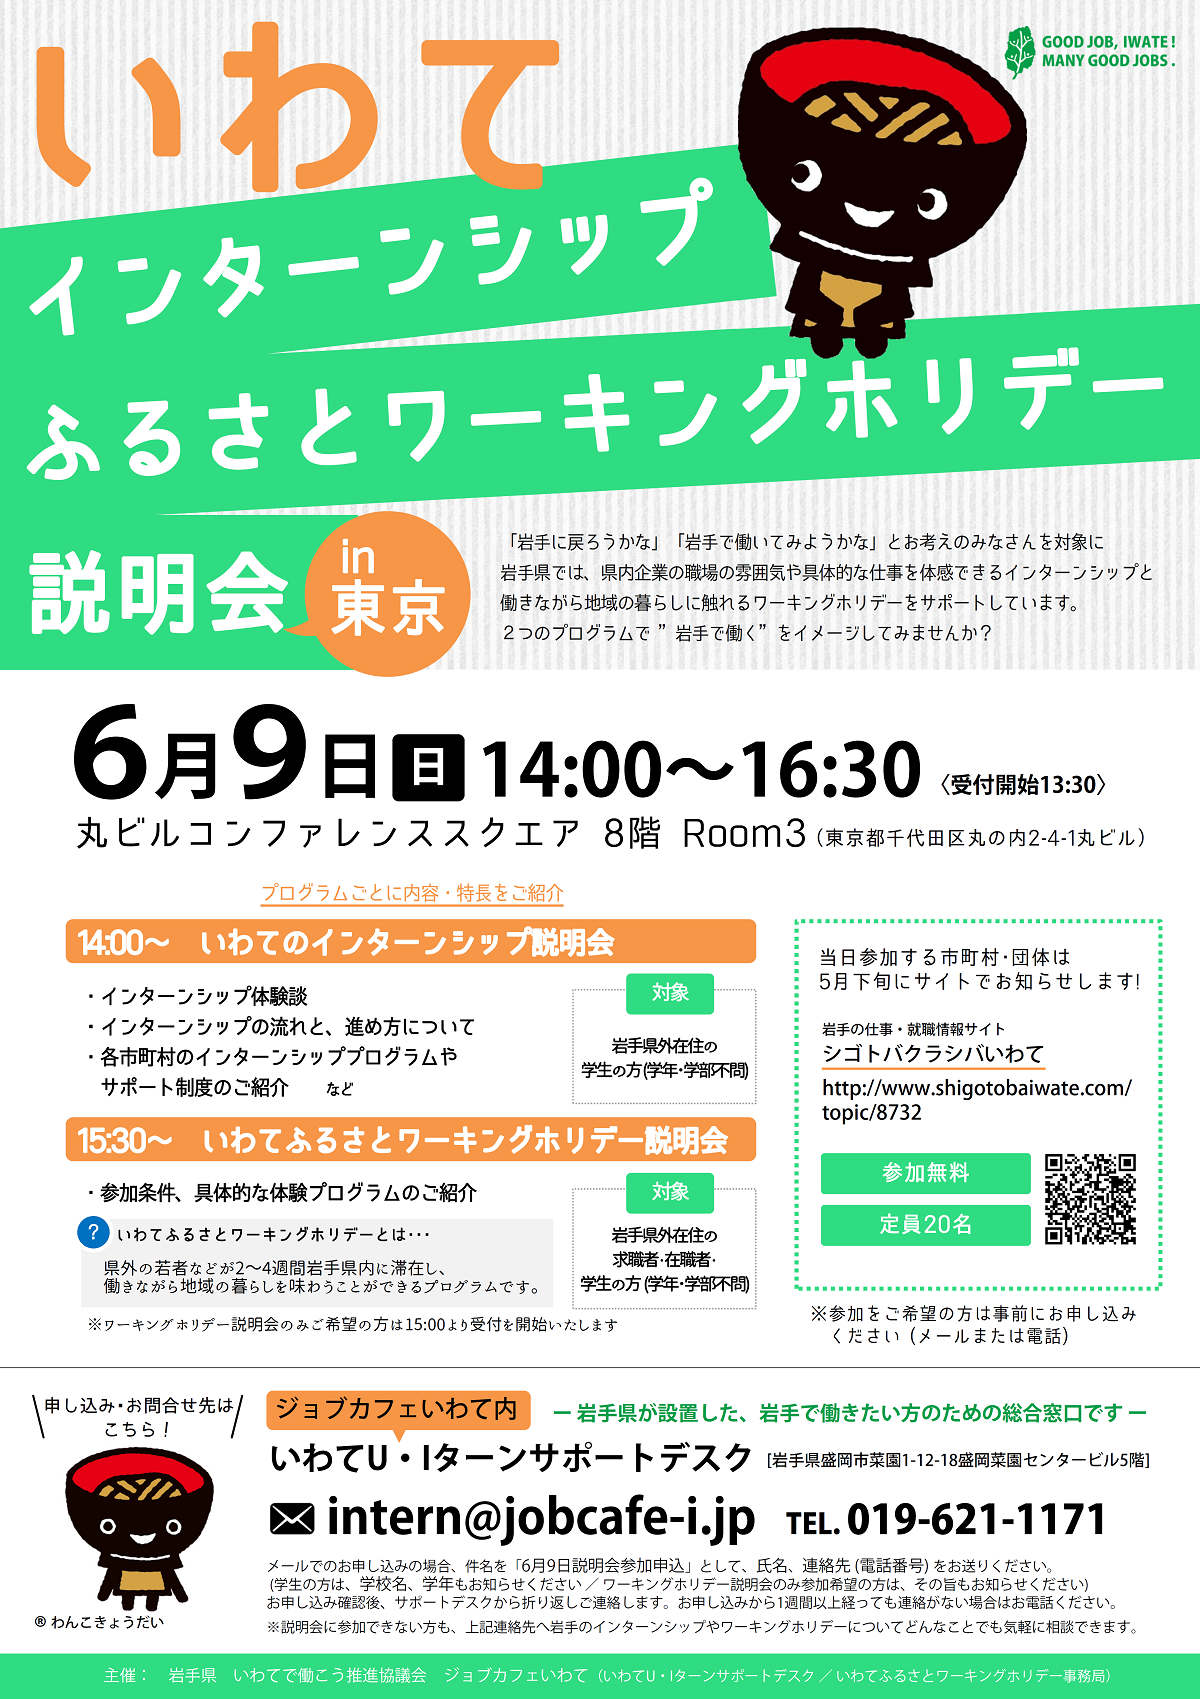 いわてインターンシップ・ふるさとワーキングホリデー説明会in東京 | 移住関連イベント情報